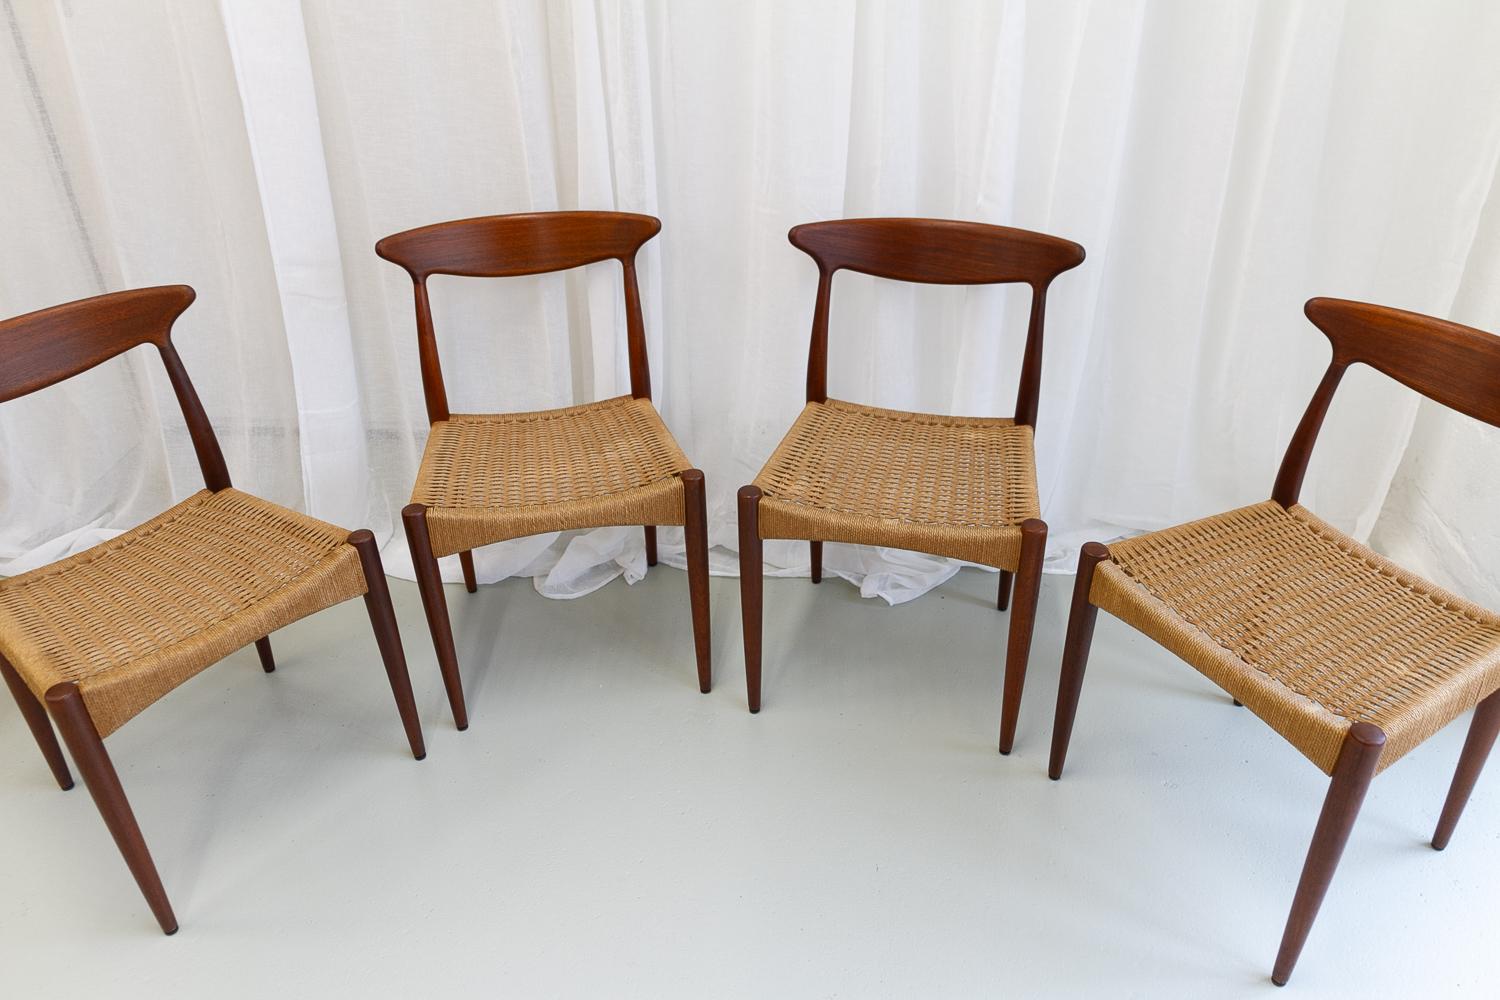 Mid-20th Century Danish Modern Teak Chairs by Arne Hovmand-Olsen for Mogens Kold, 1950s. Set of 4 For Sale